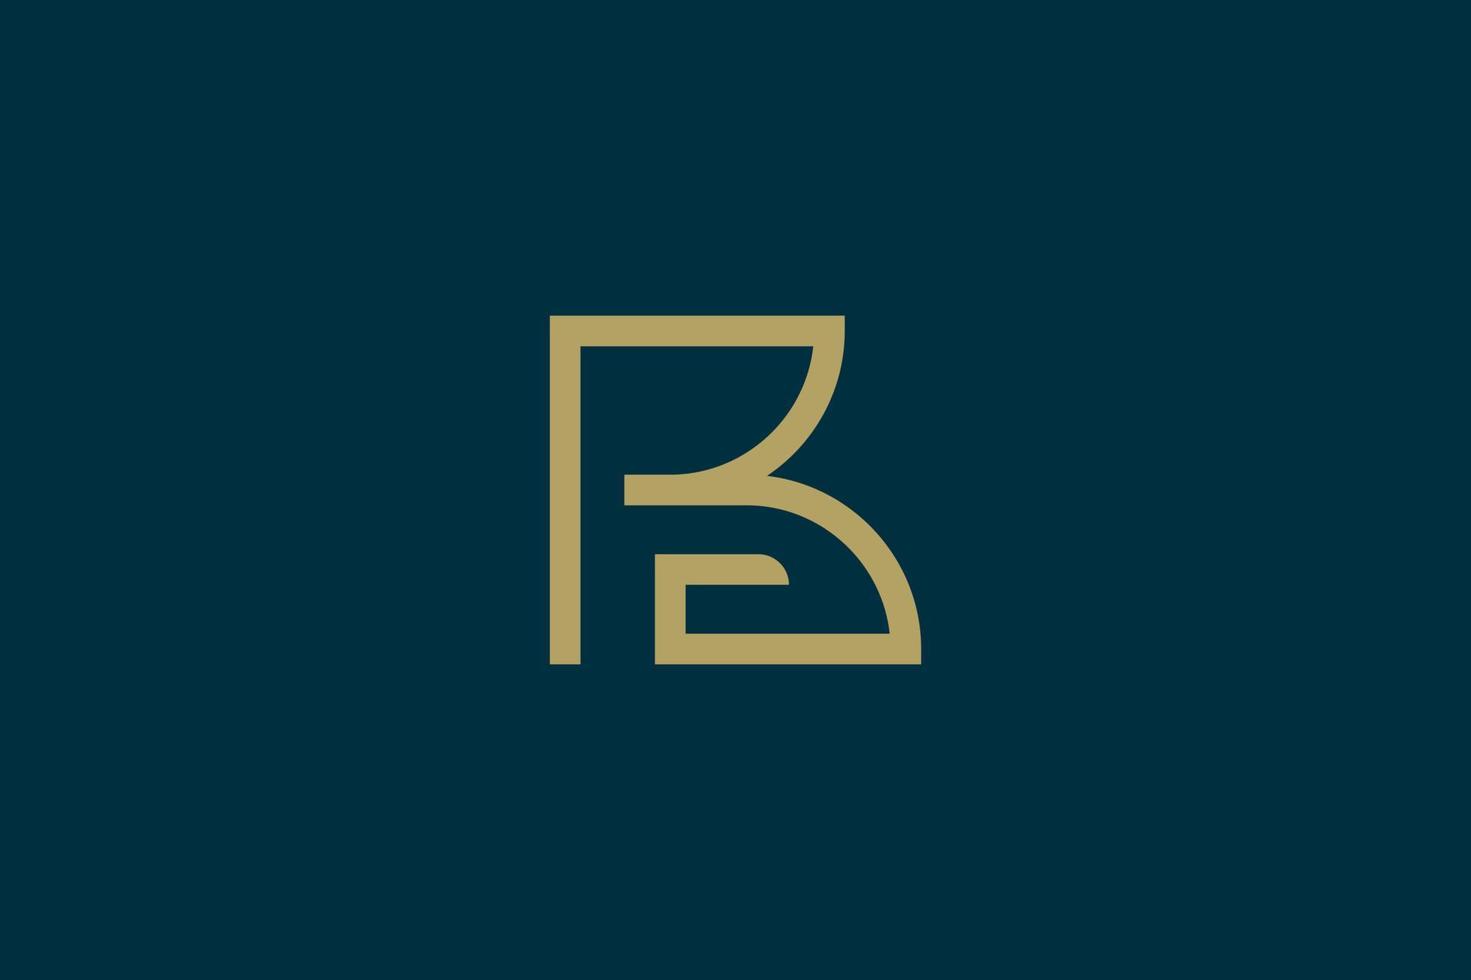 Golden letter B logo design inspiration vector